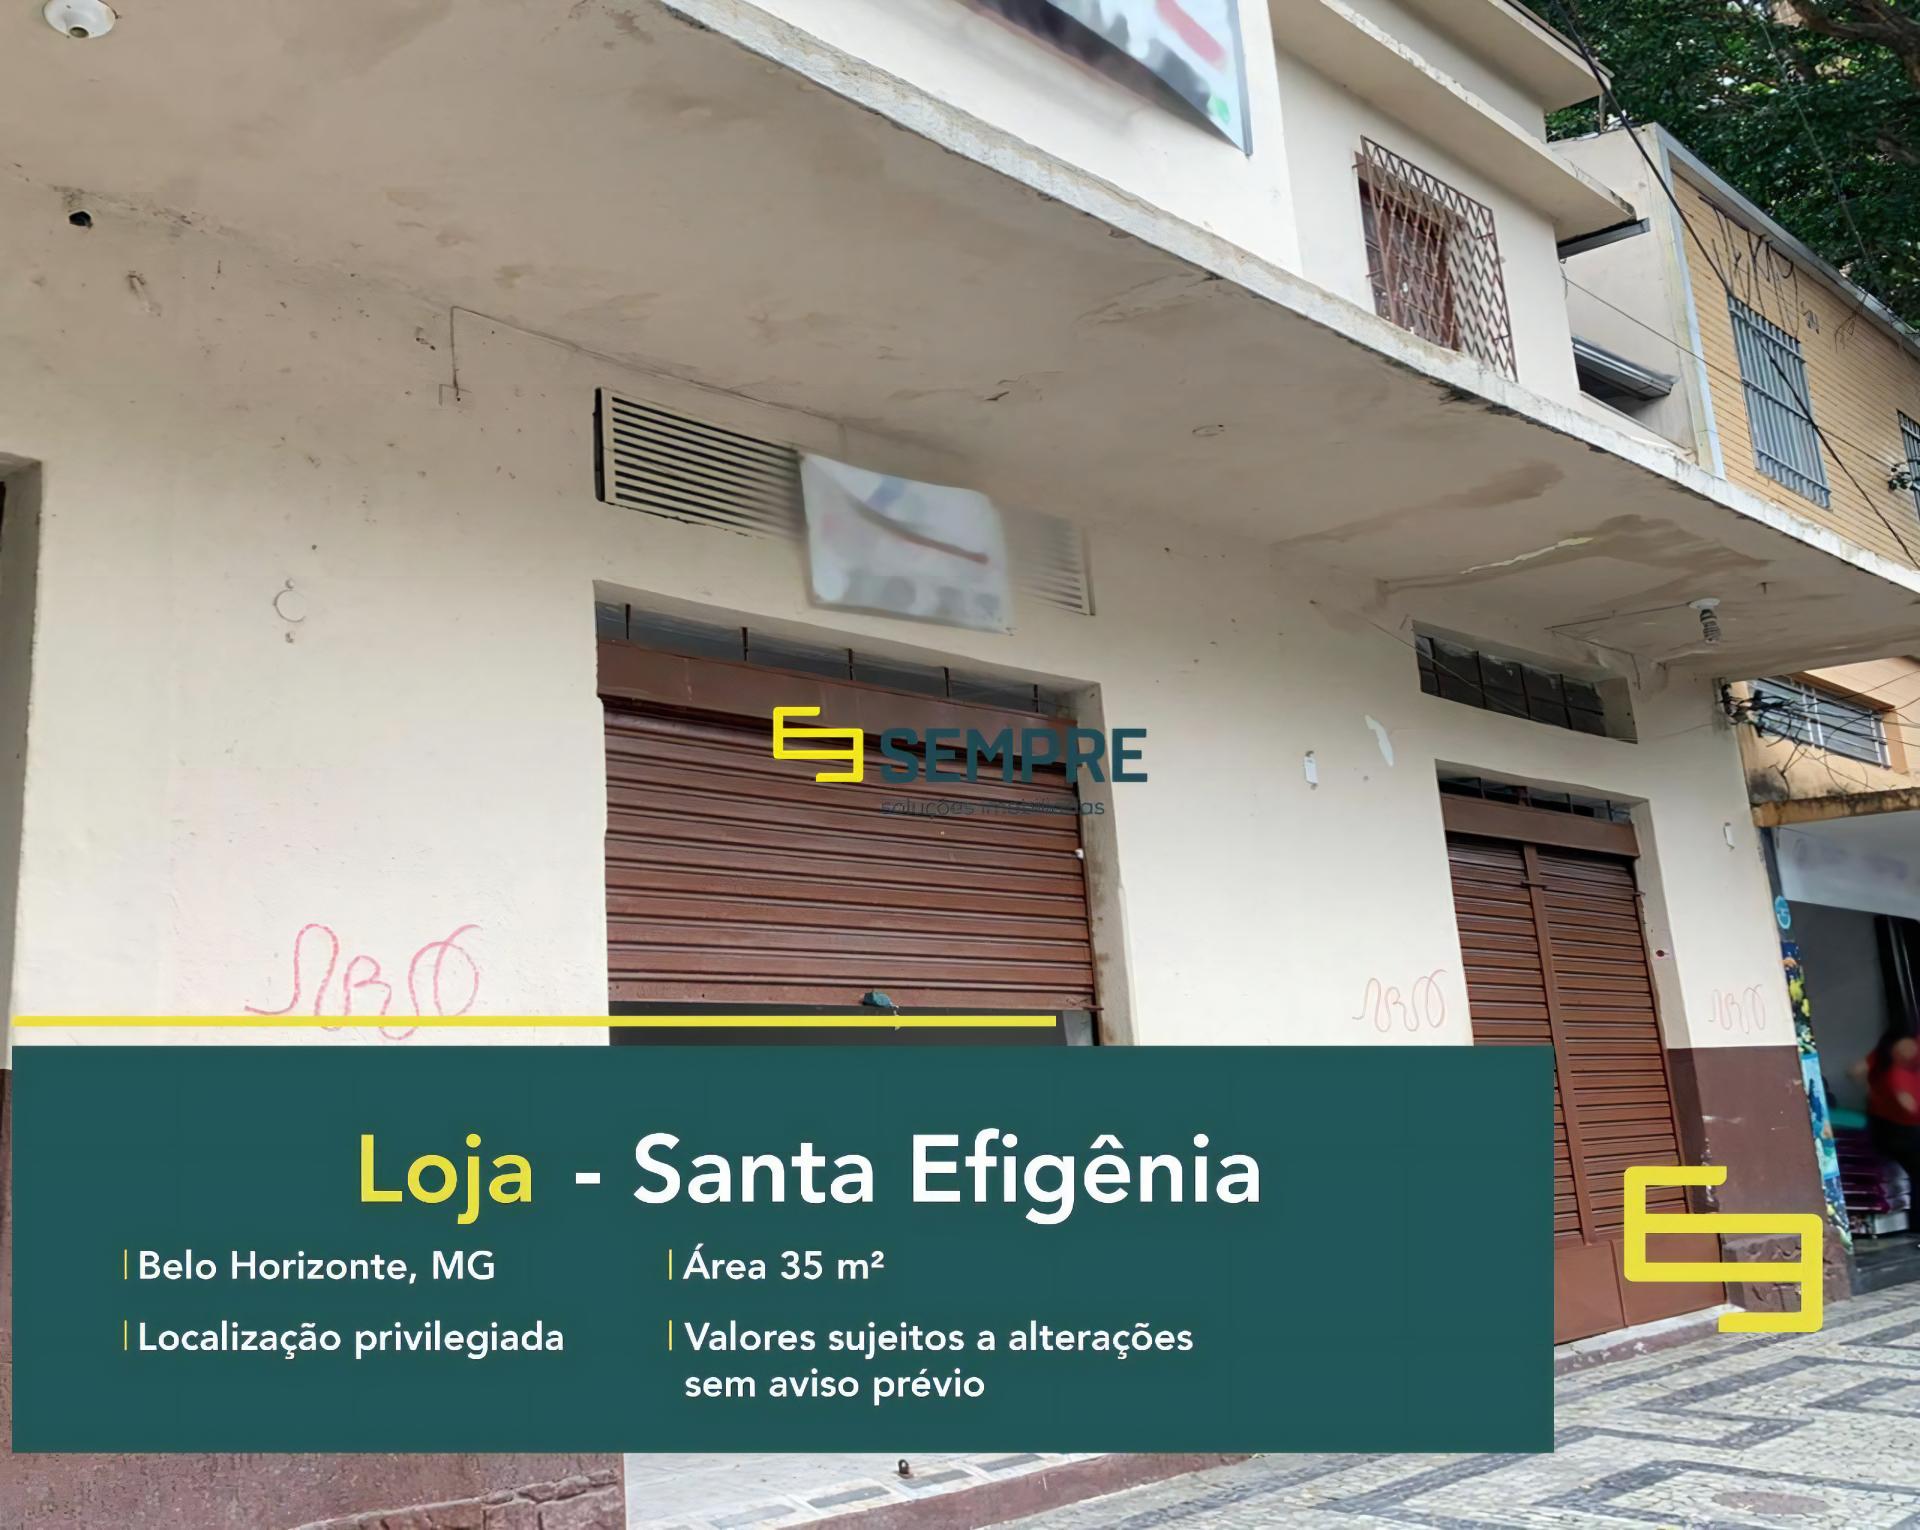 Loja para locação no bairro Santa Efigênia em Belo Horizonte, excelente localização. O estabelecimento comercial conta com área de 35 m².